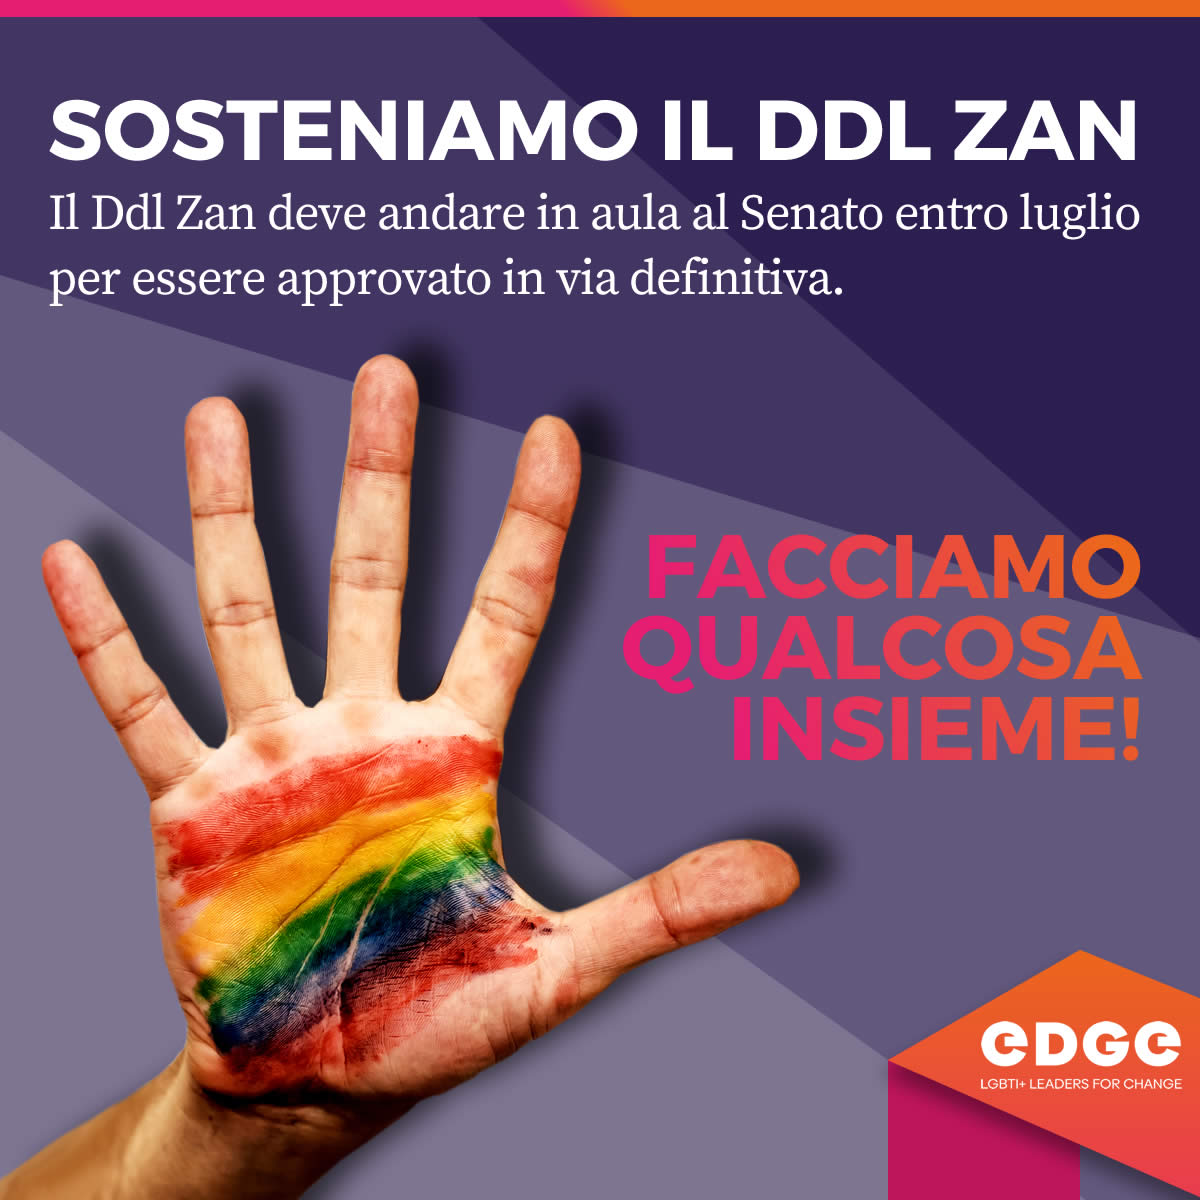 Sosteniamo il DDL ZAN | EDGE LGBTI+Leaders for change